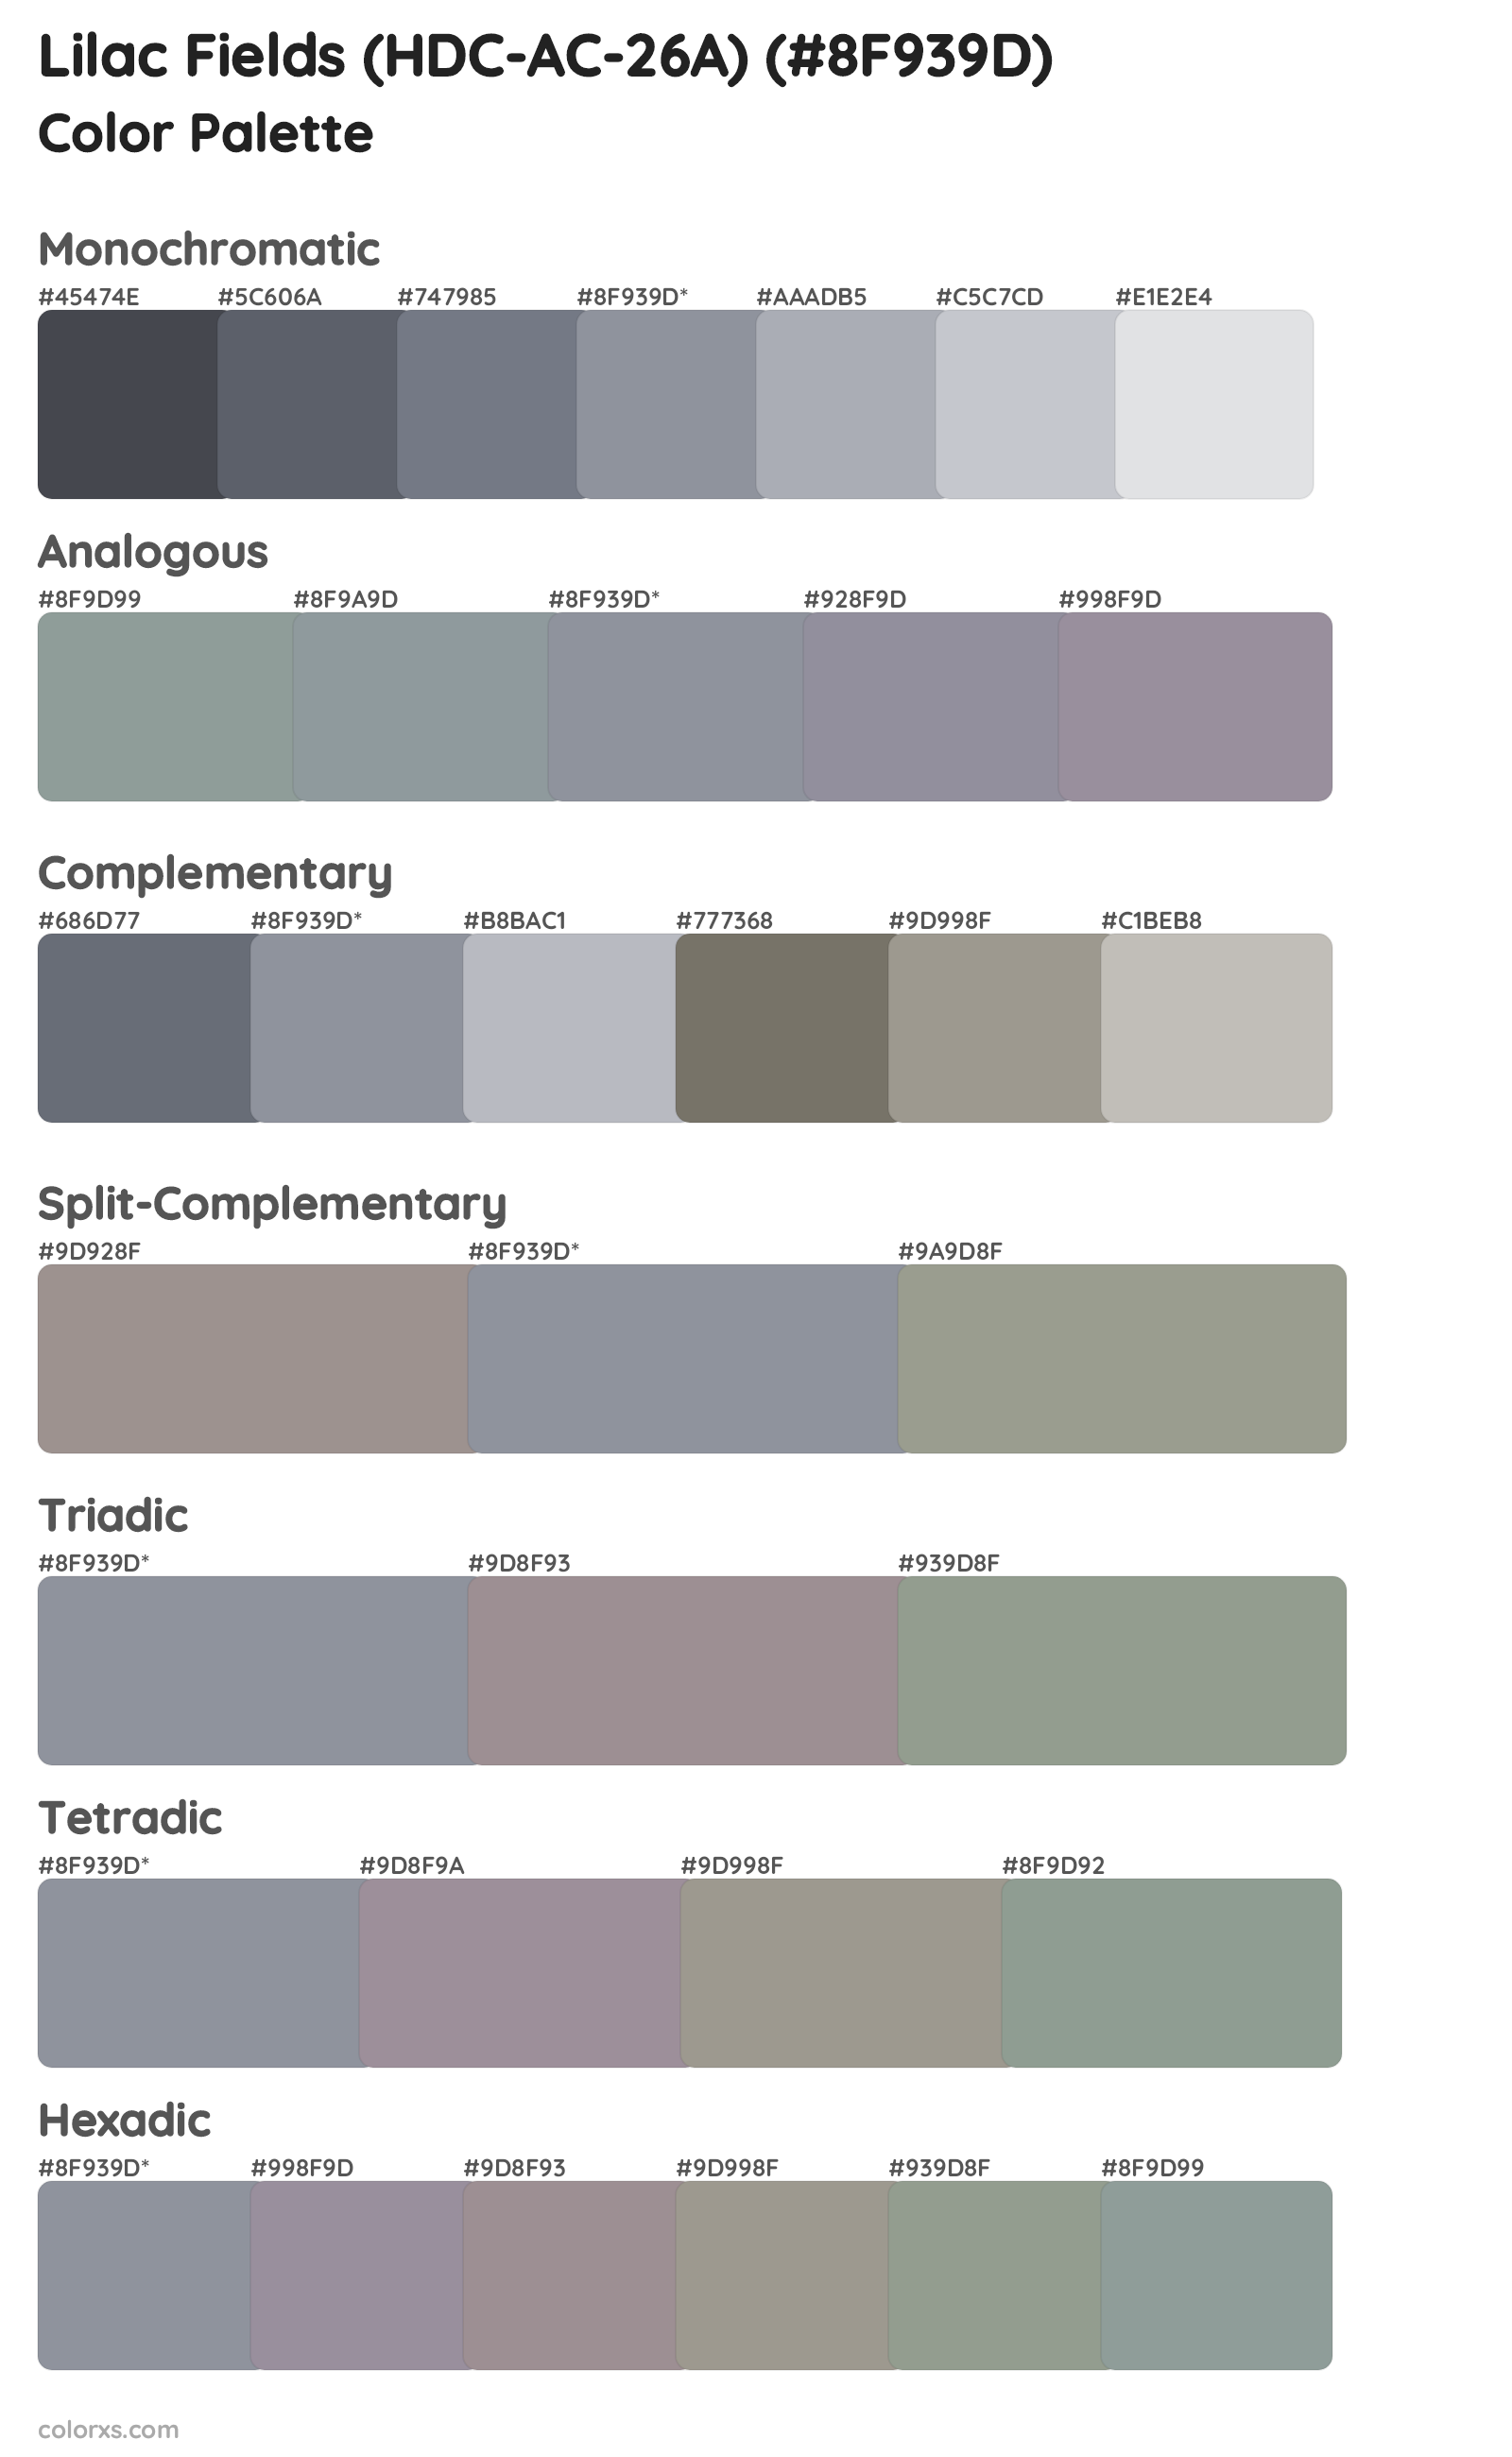 Lilac Fields (HDC-AC-26A) Color Scheme Palettes